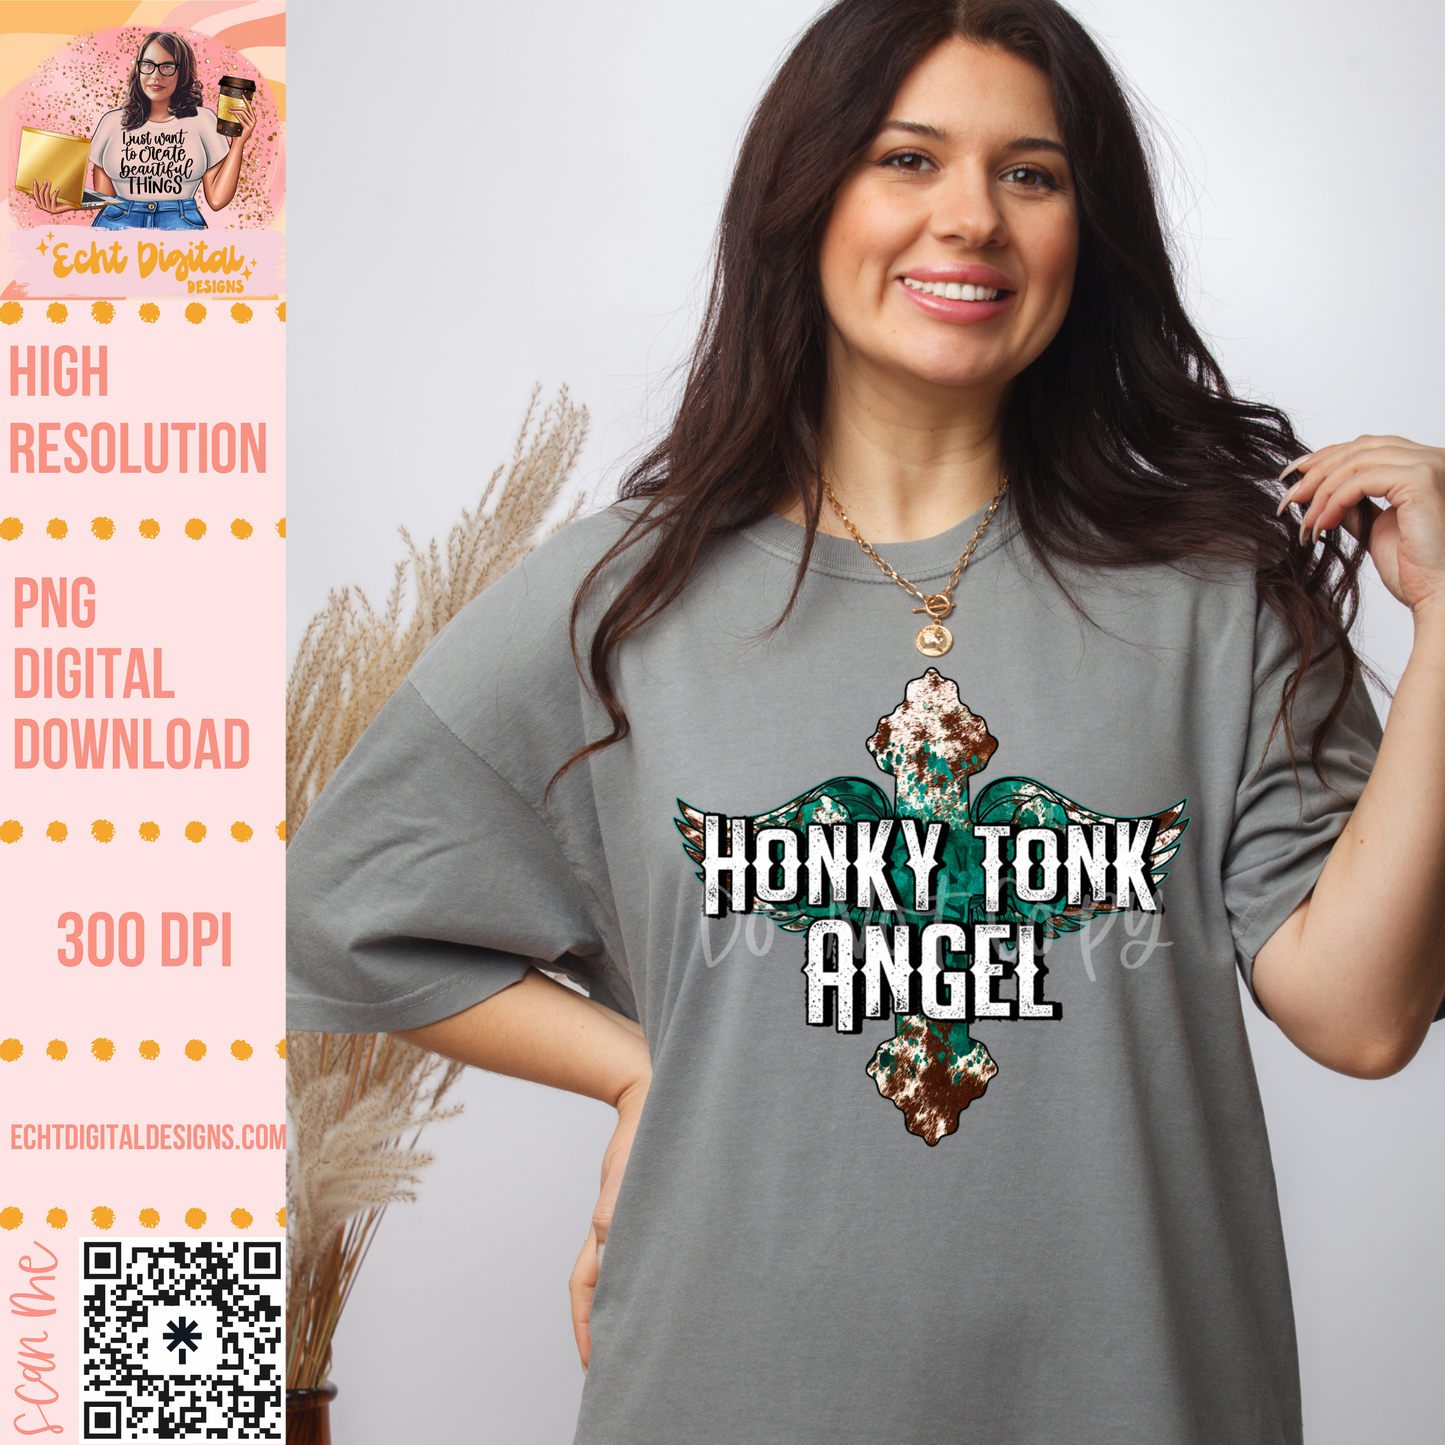 Honky Tonky Angel PNG Digital Download